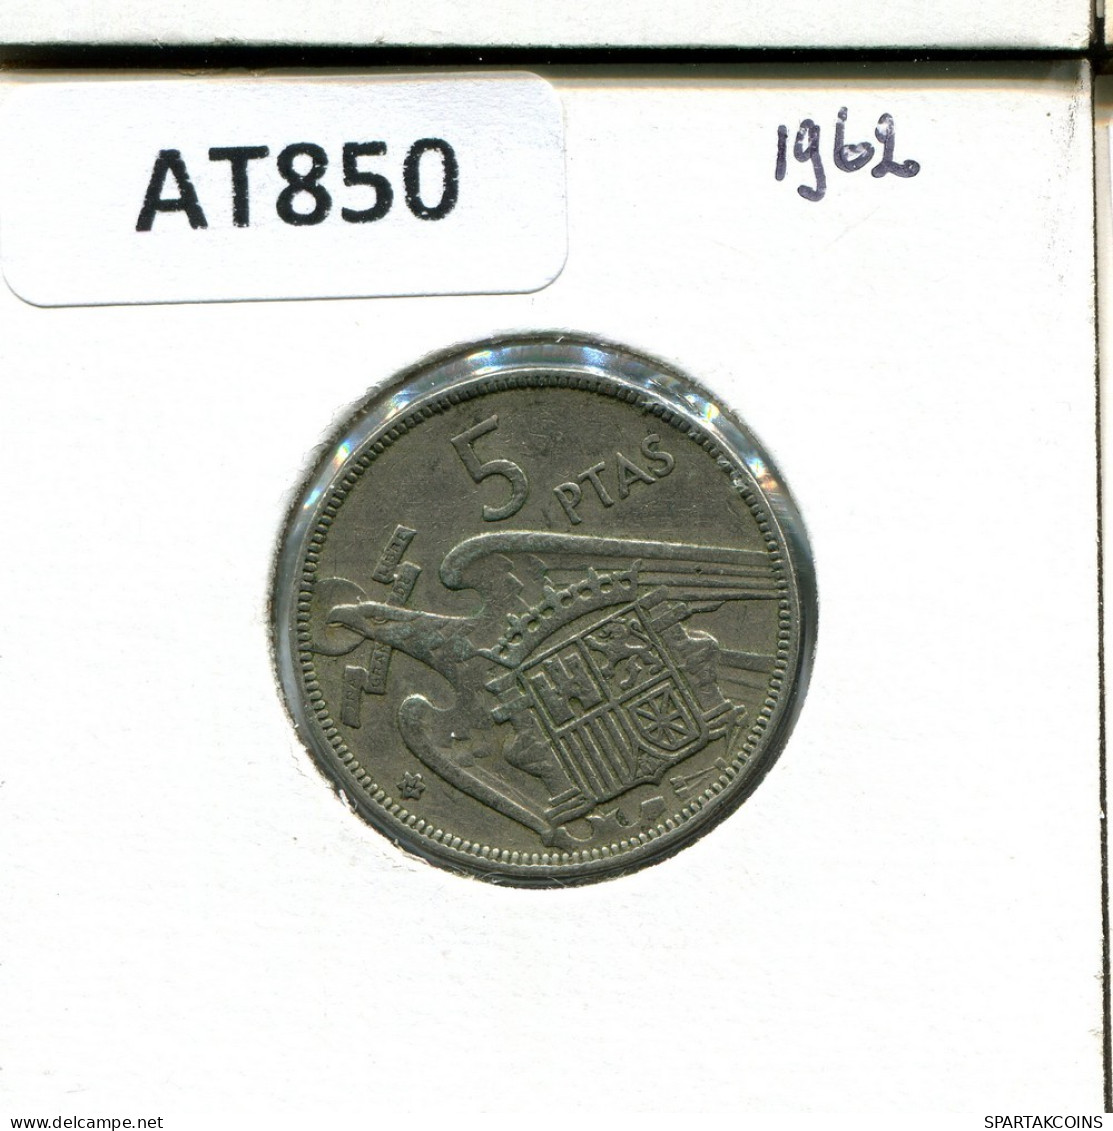 5 PESETAS 1962 ESPAÑA Moneda SPAIN #AT850.E.A - 5 Pesetas